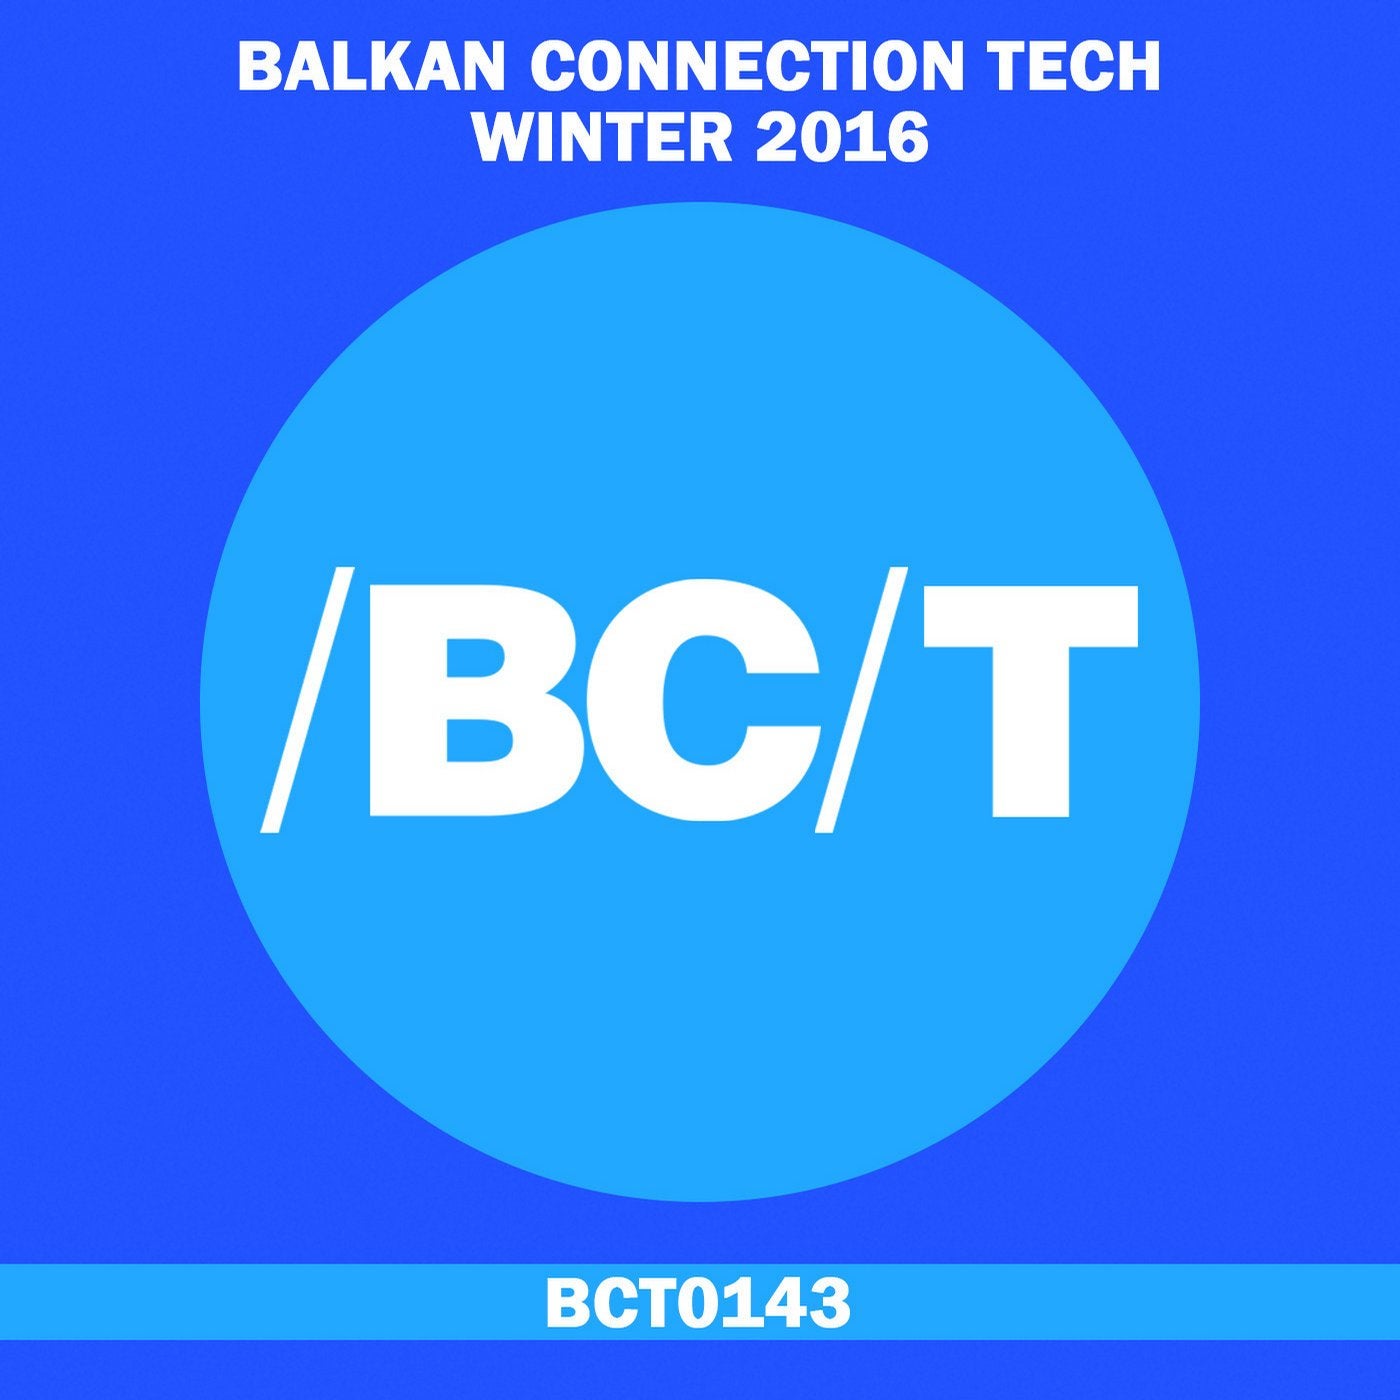 Balkan Connection Tech Winter 2016